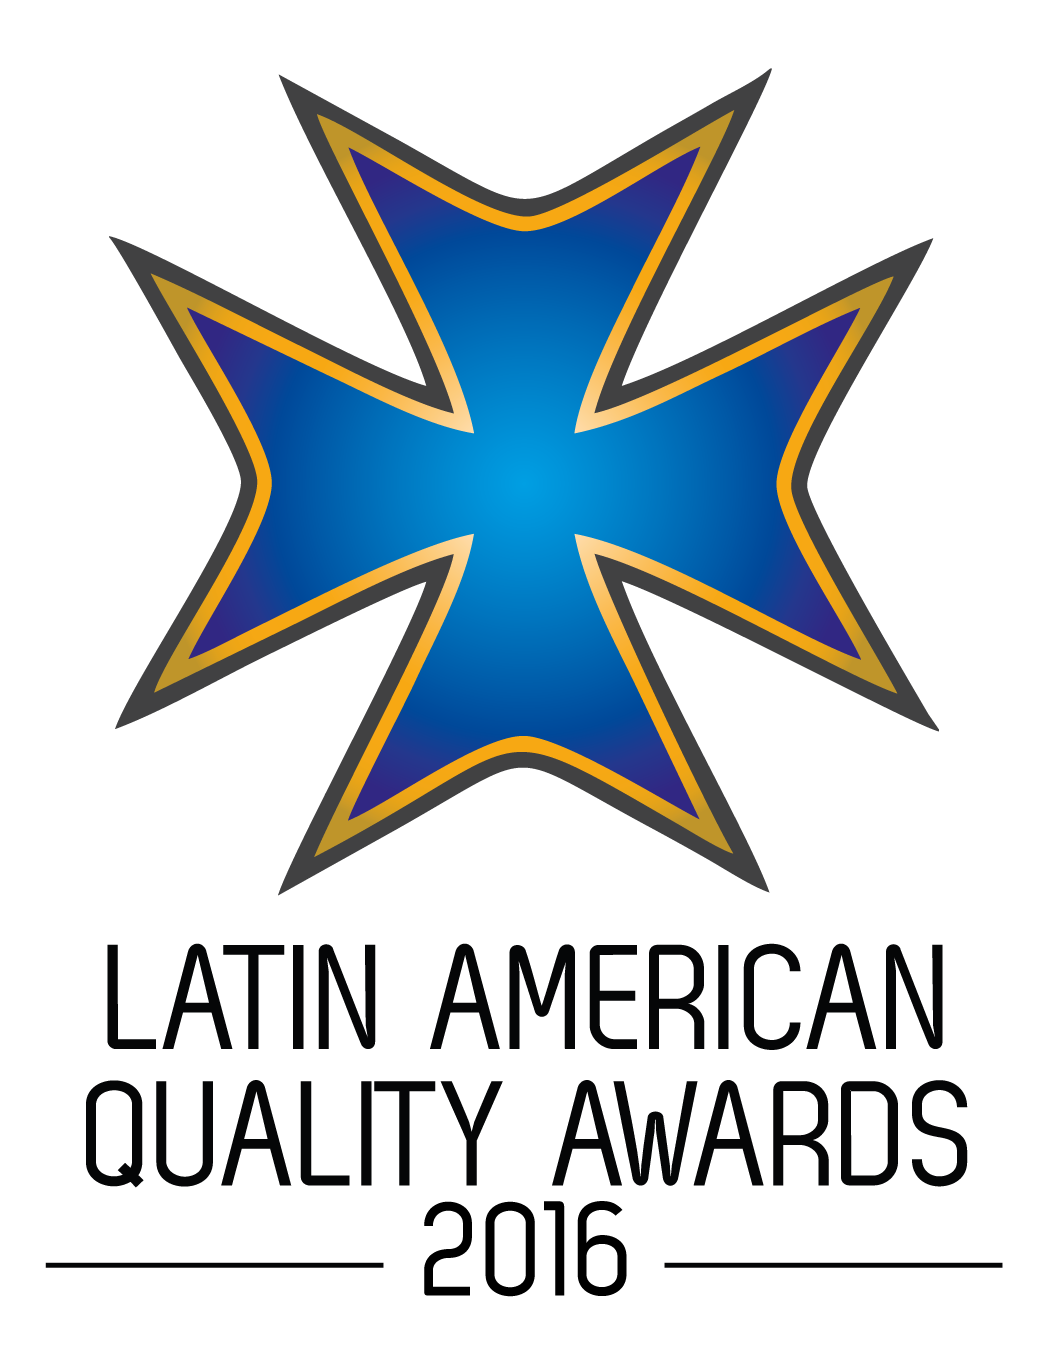 Latin America Award